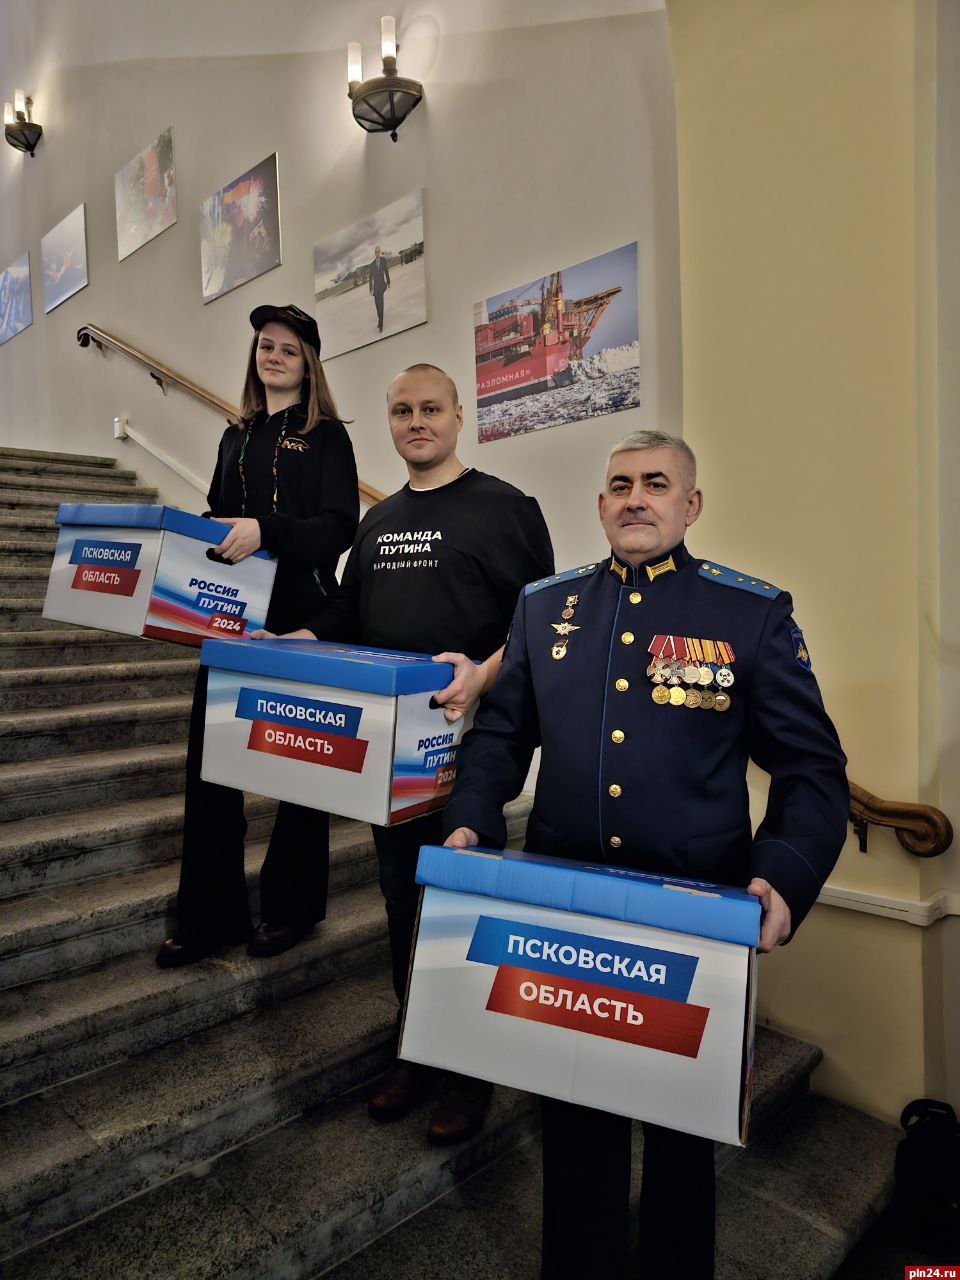 Псковская делегация сдала подписи в поддержку выдвижения Путина на выборы